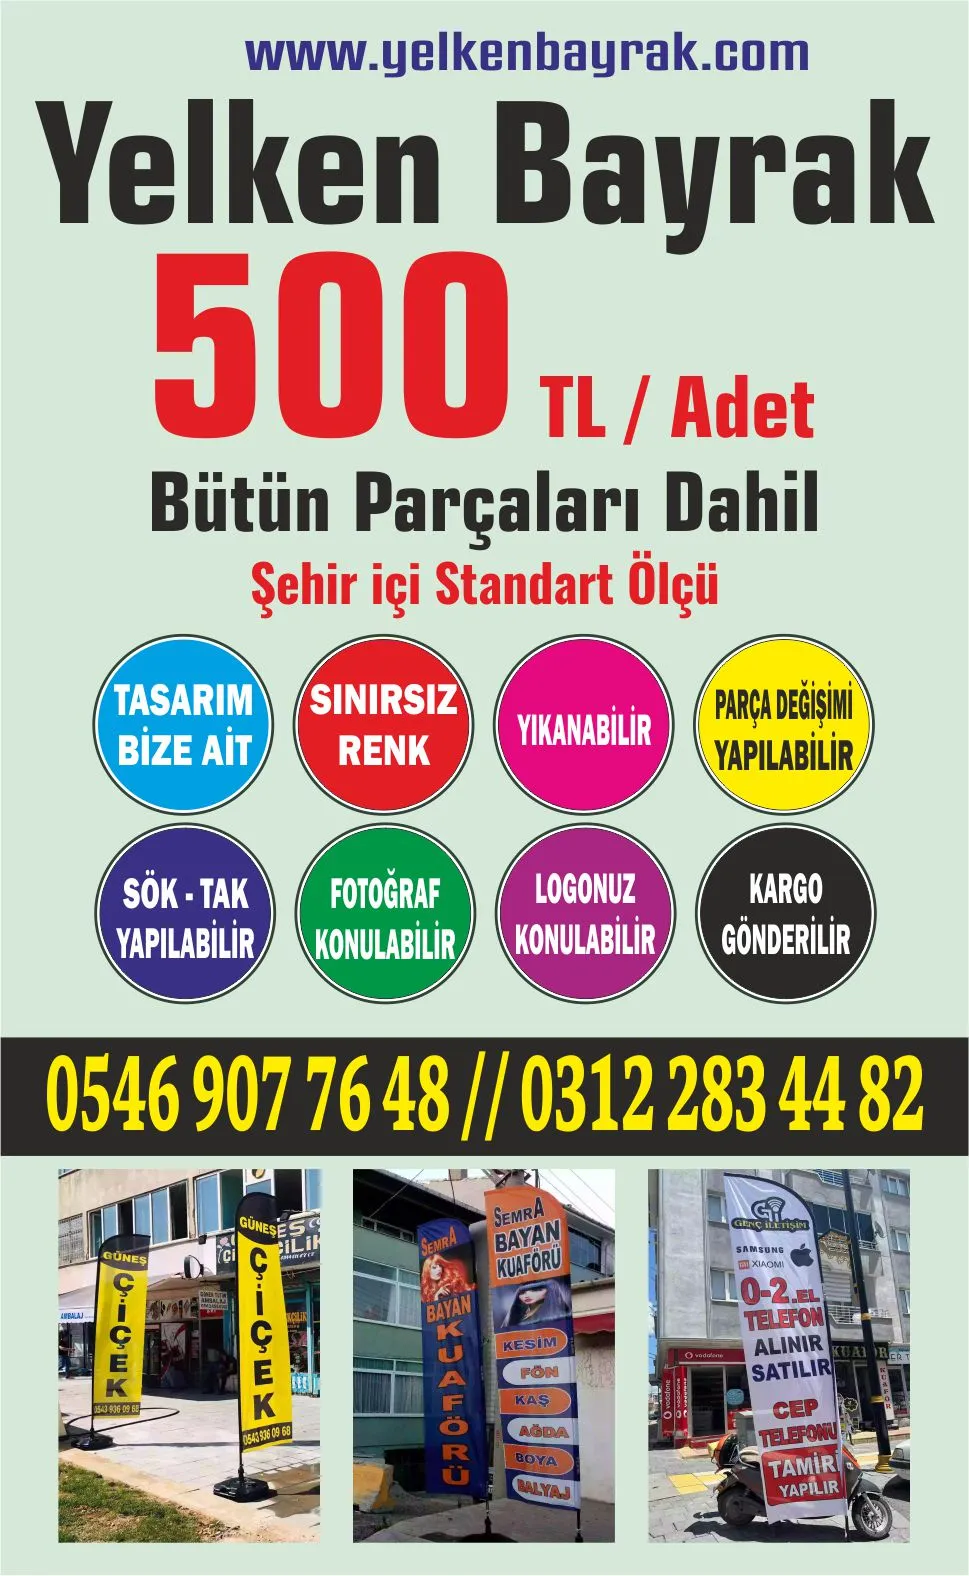 İstanbul Yelken Bayrak Fiyatları, Olta Bayrak Fiyatları, Dubalı Bayrak Fiyatları, Plaj Bayrağı Fiyatları, Yolbayrağı Fiyatları